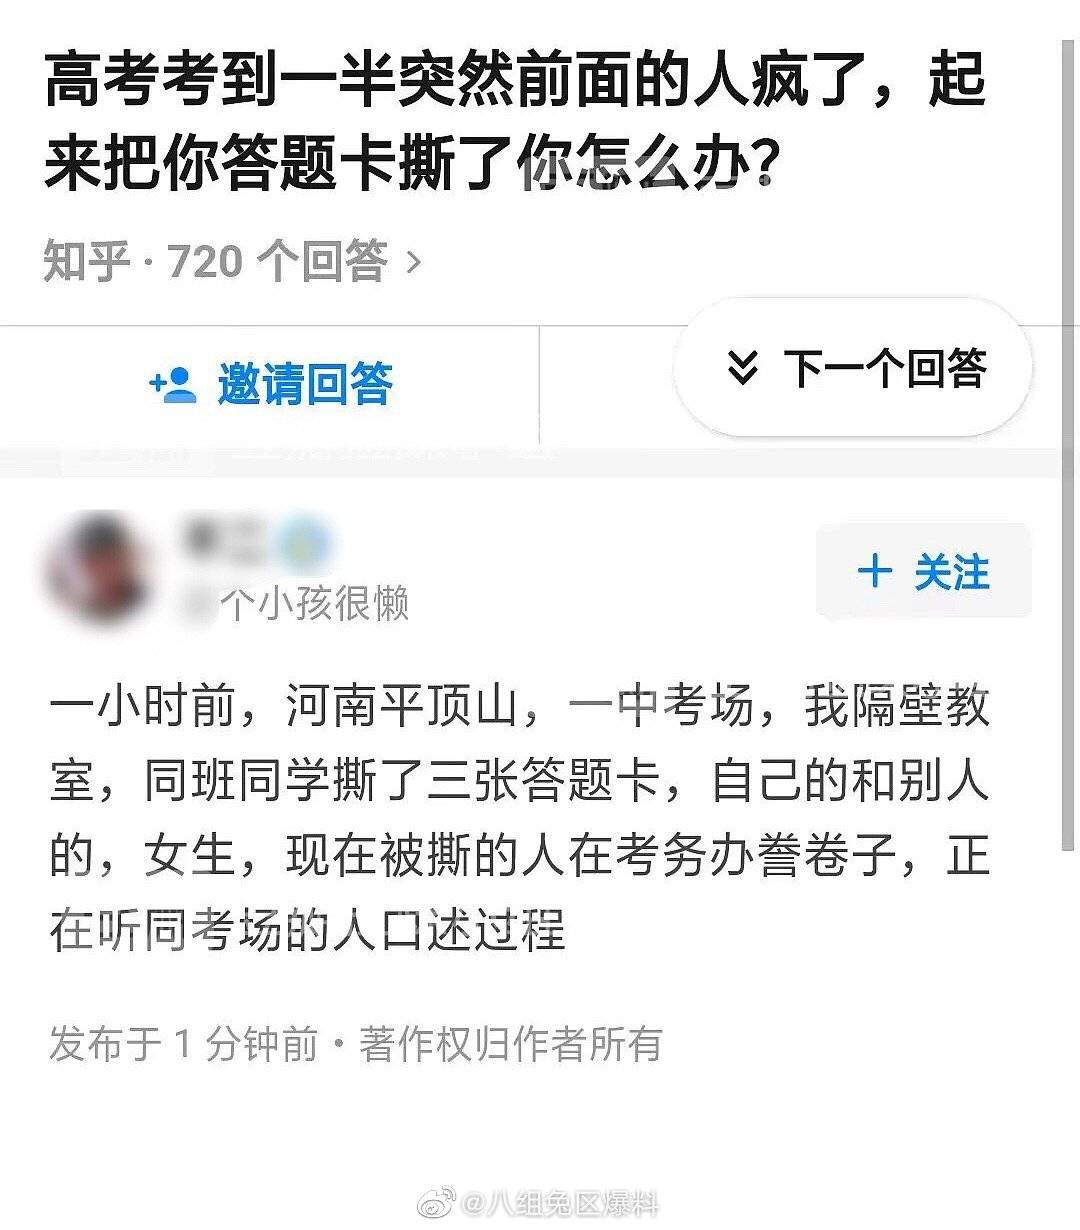 河南省招办回应“考生撕他人答题卡”：依规将取消其全科成绩